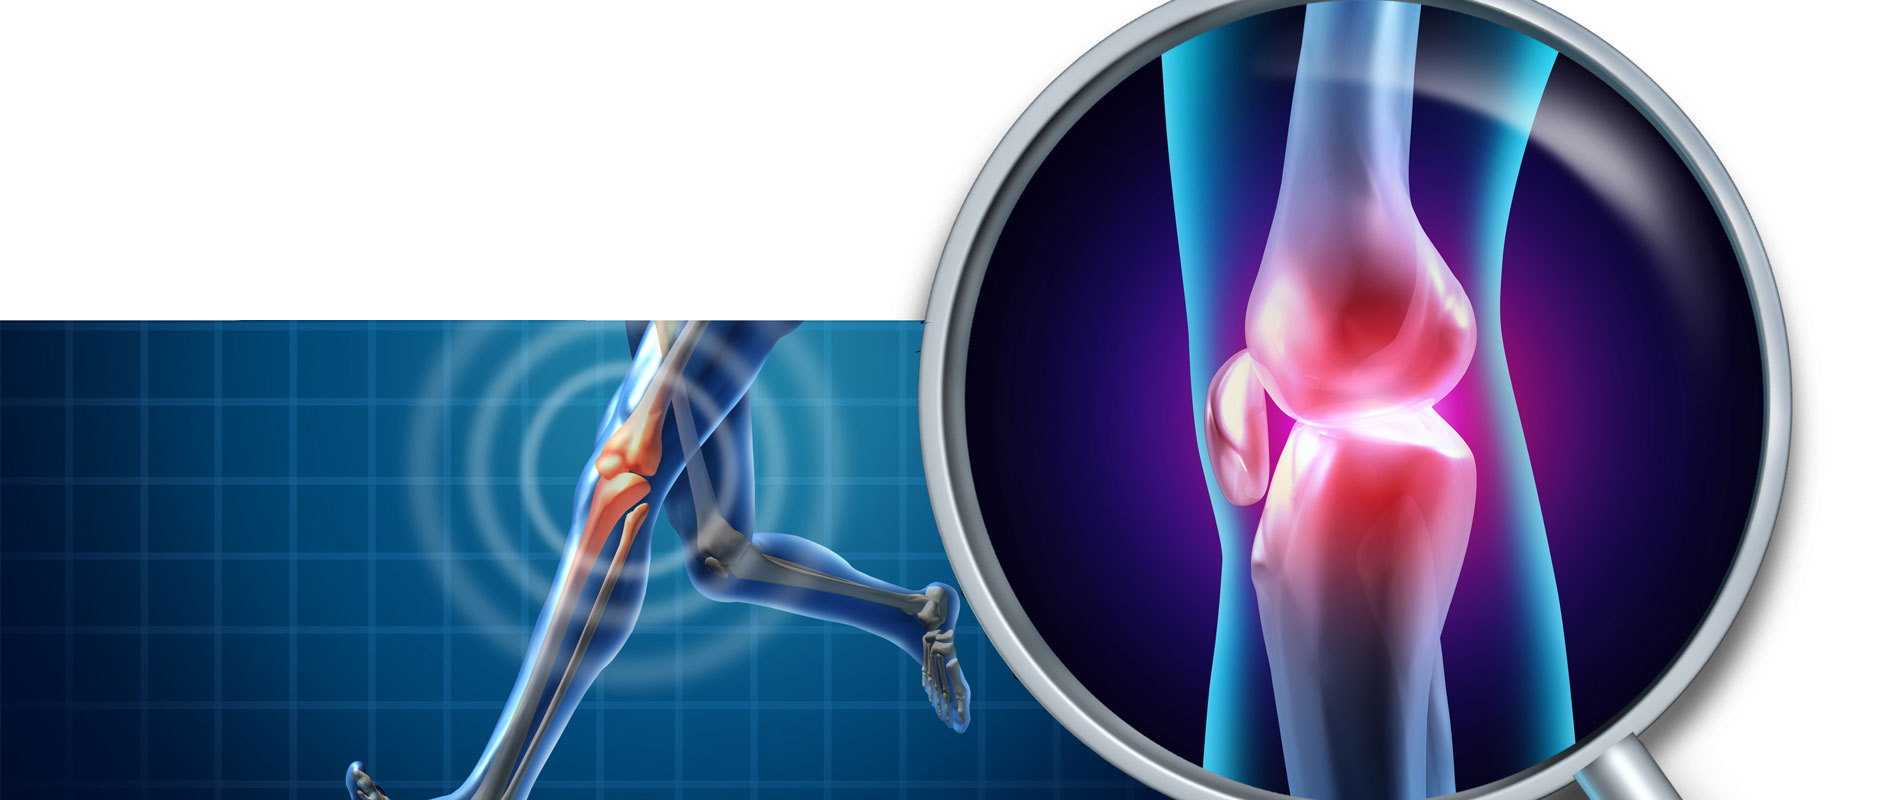 Νέα επιστημονικά δεδομένα για τη χειρουργική επέμβαση γόνατος